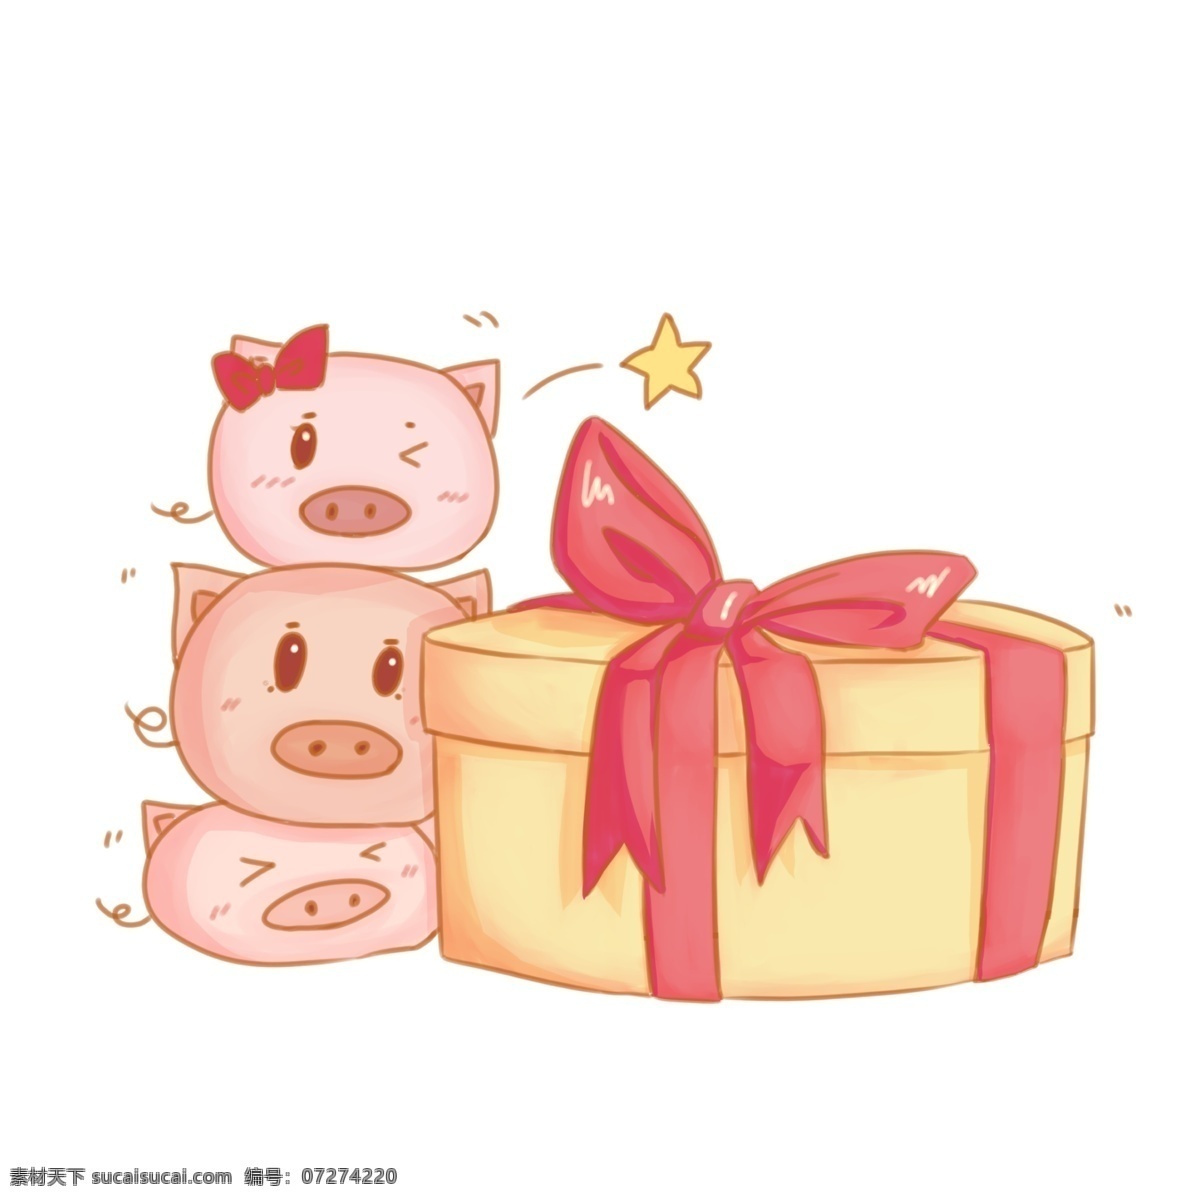 送礼 卡通 手绘 插画 小猪 粉色的小猪 黄色 三只小猪 礼物 礼物盒 蝴蝶结 精致 可爱 手绘插画 小星星 眨眼睛